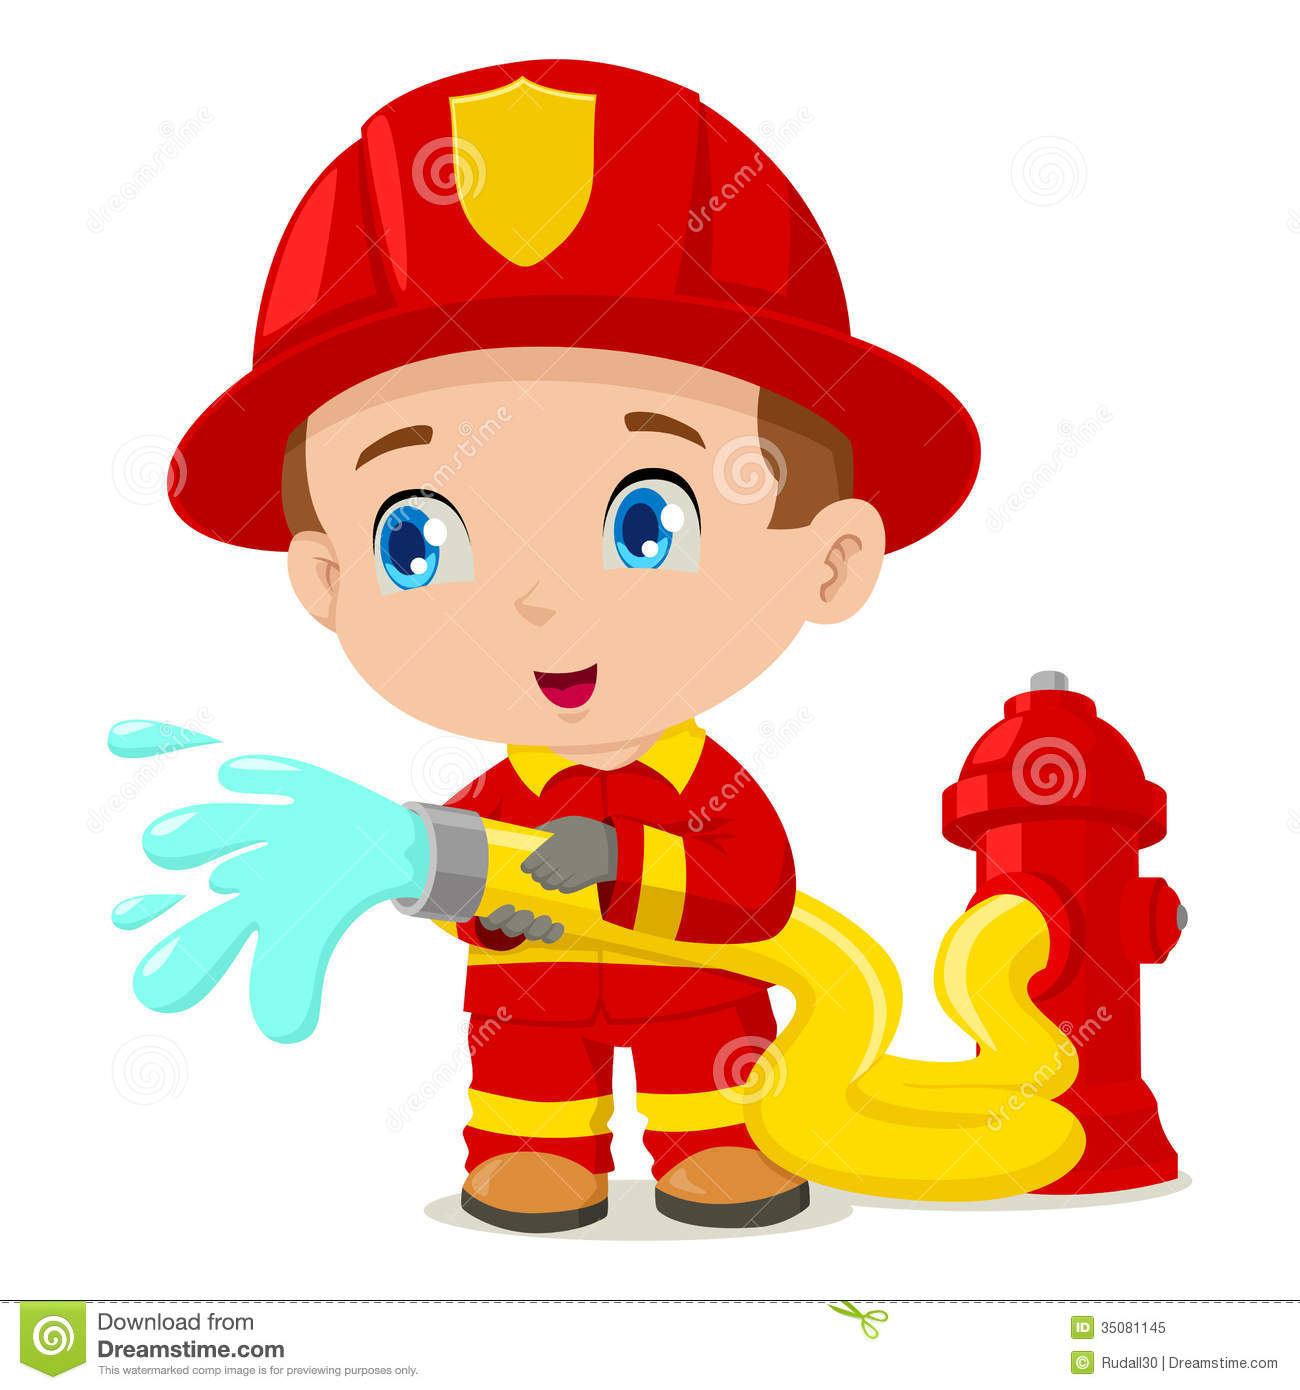 Cartoon Illustration Of A Firefighter